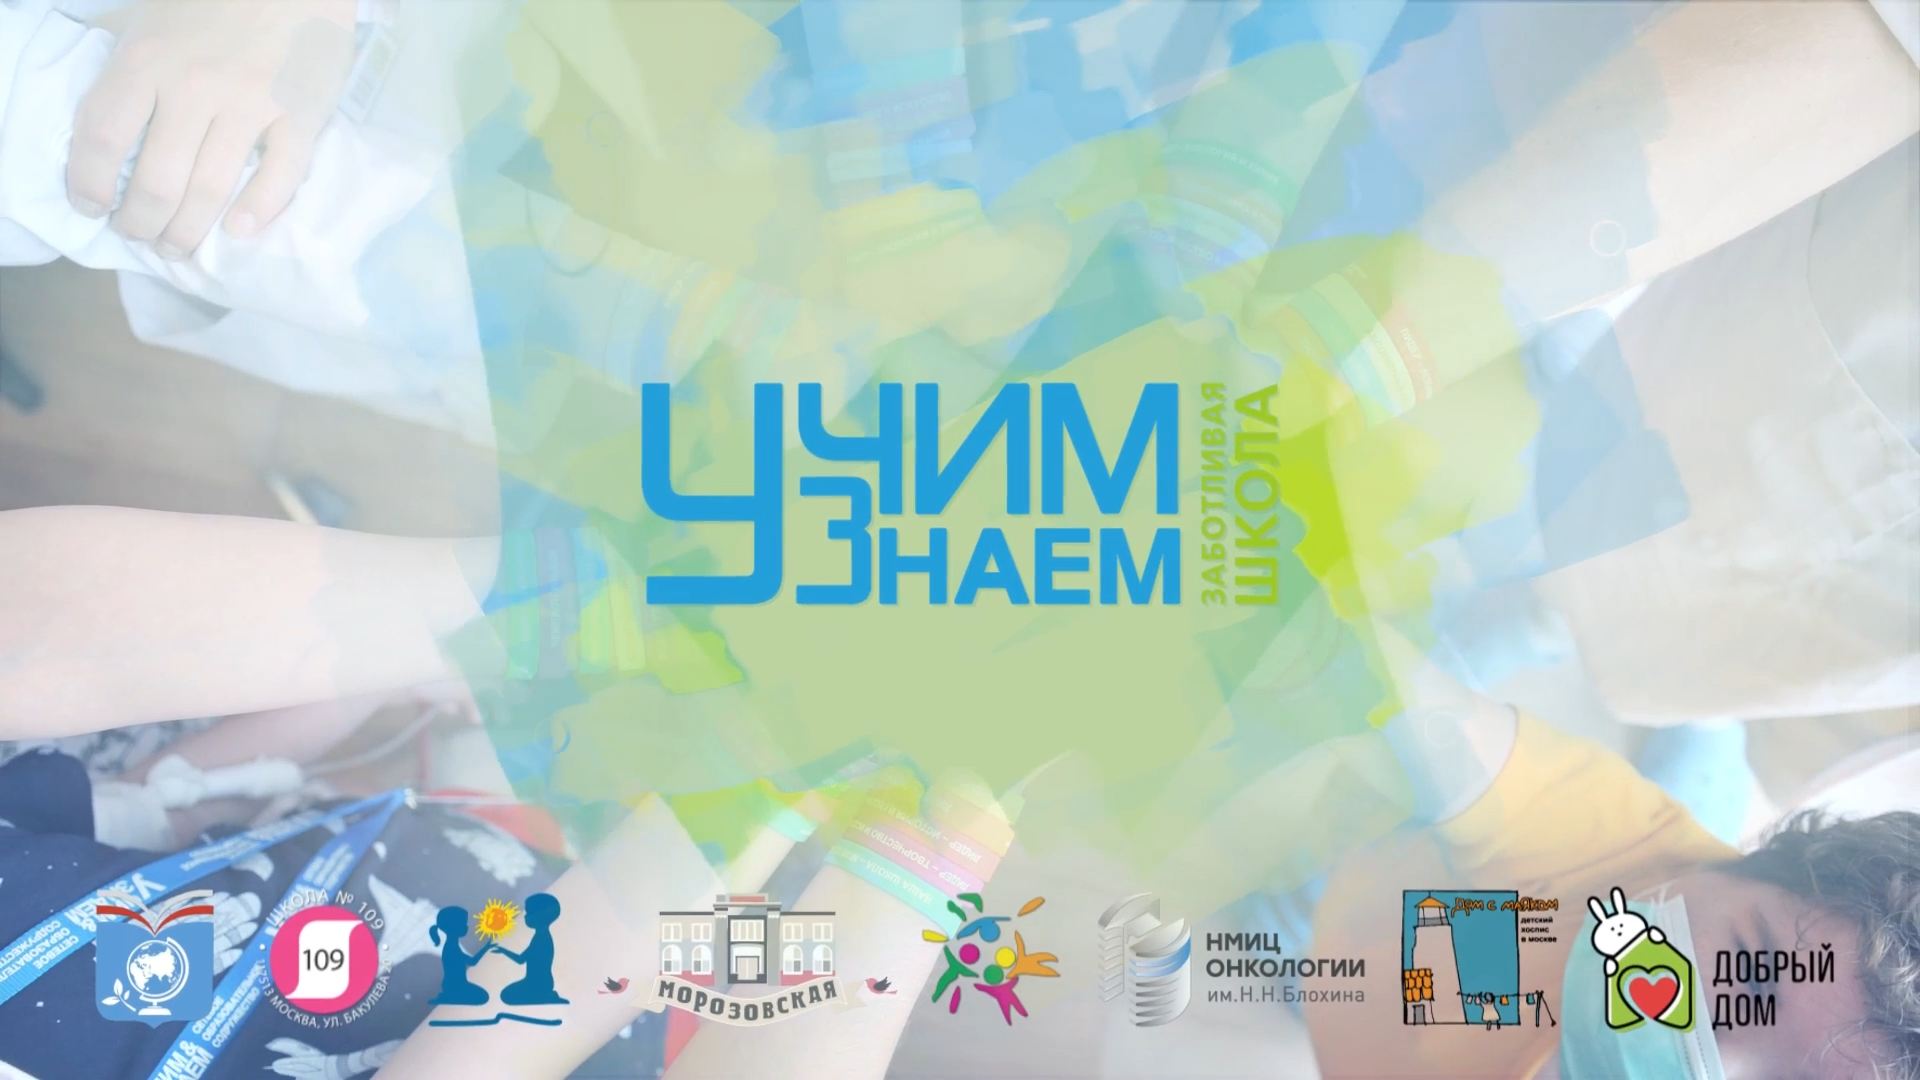 На Московском международном салоне образования состоялась дискуссия, посвященная практикам организации гибридного образования